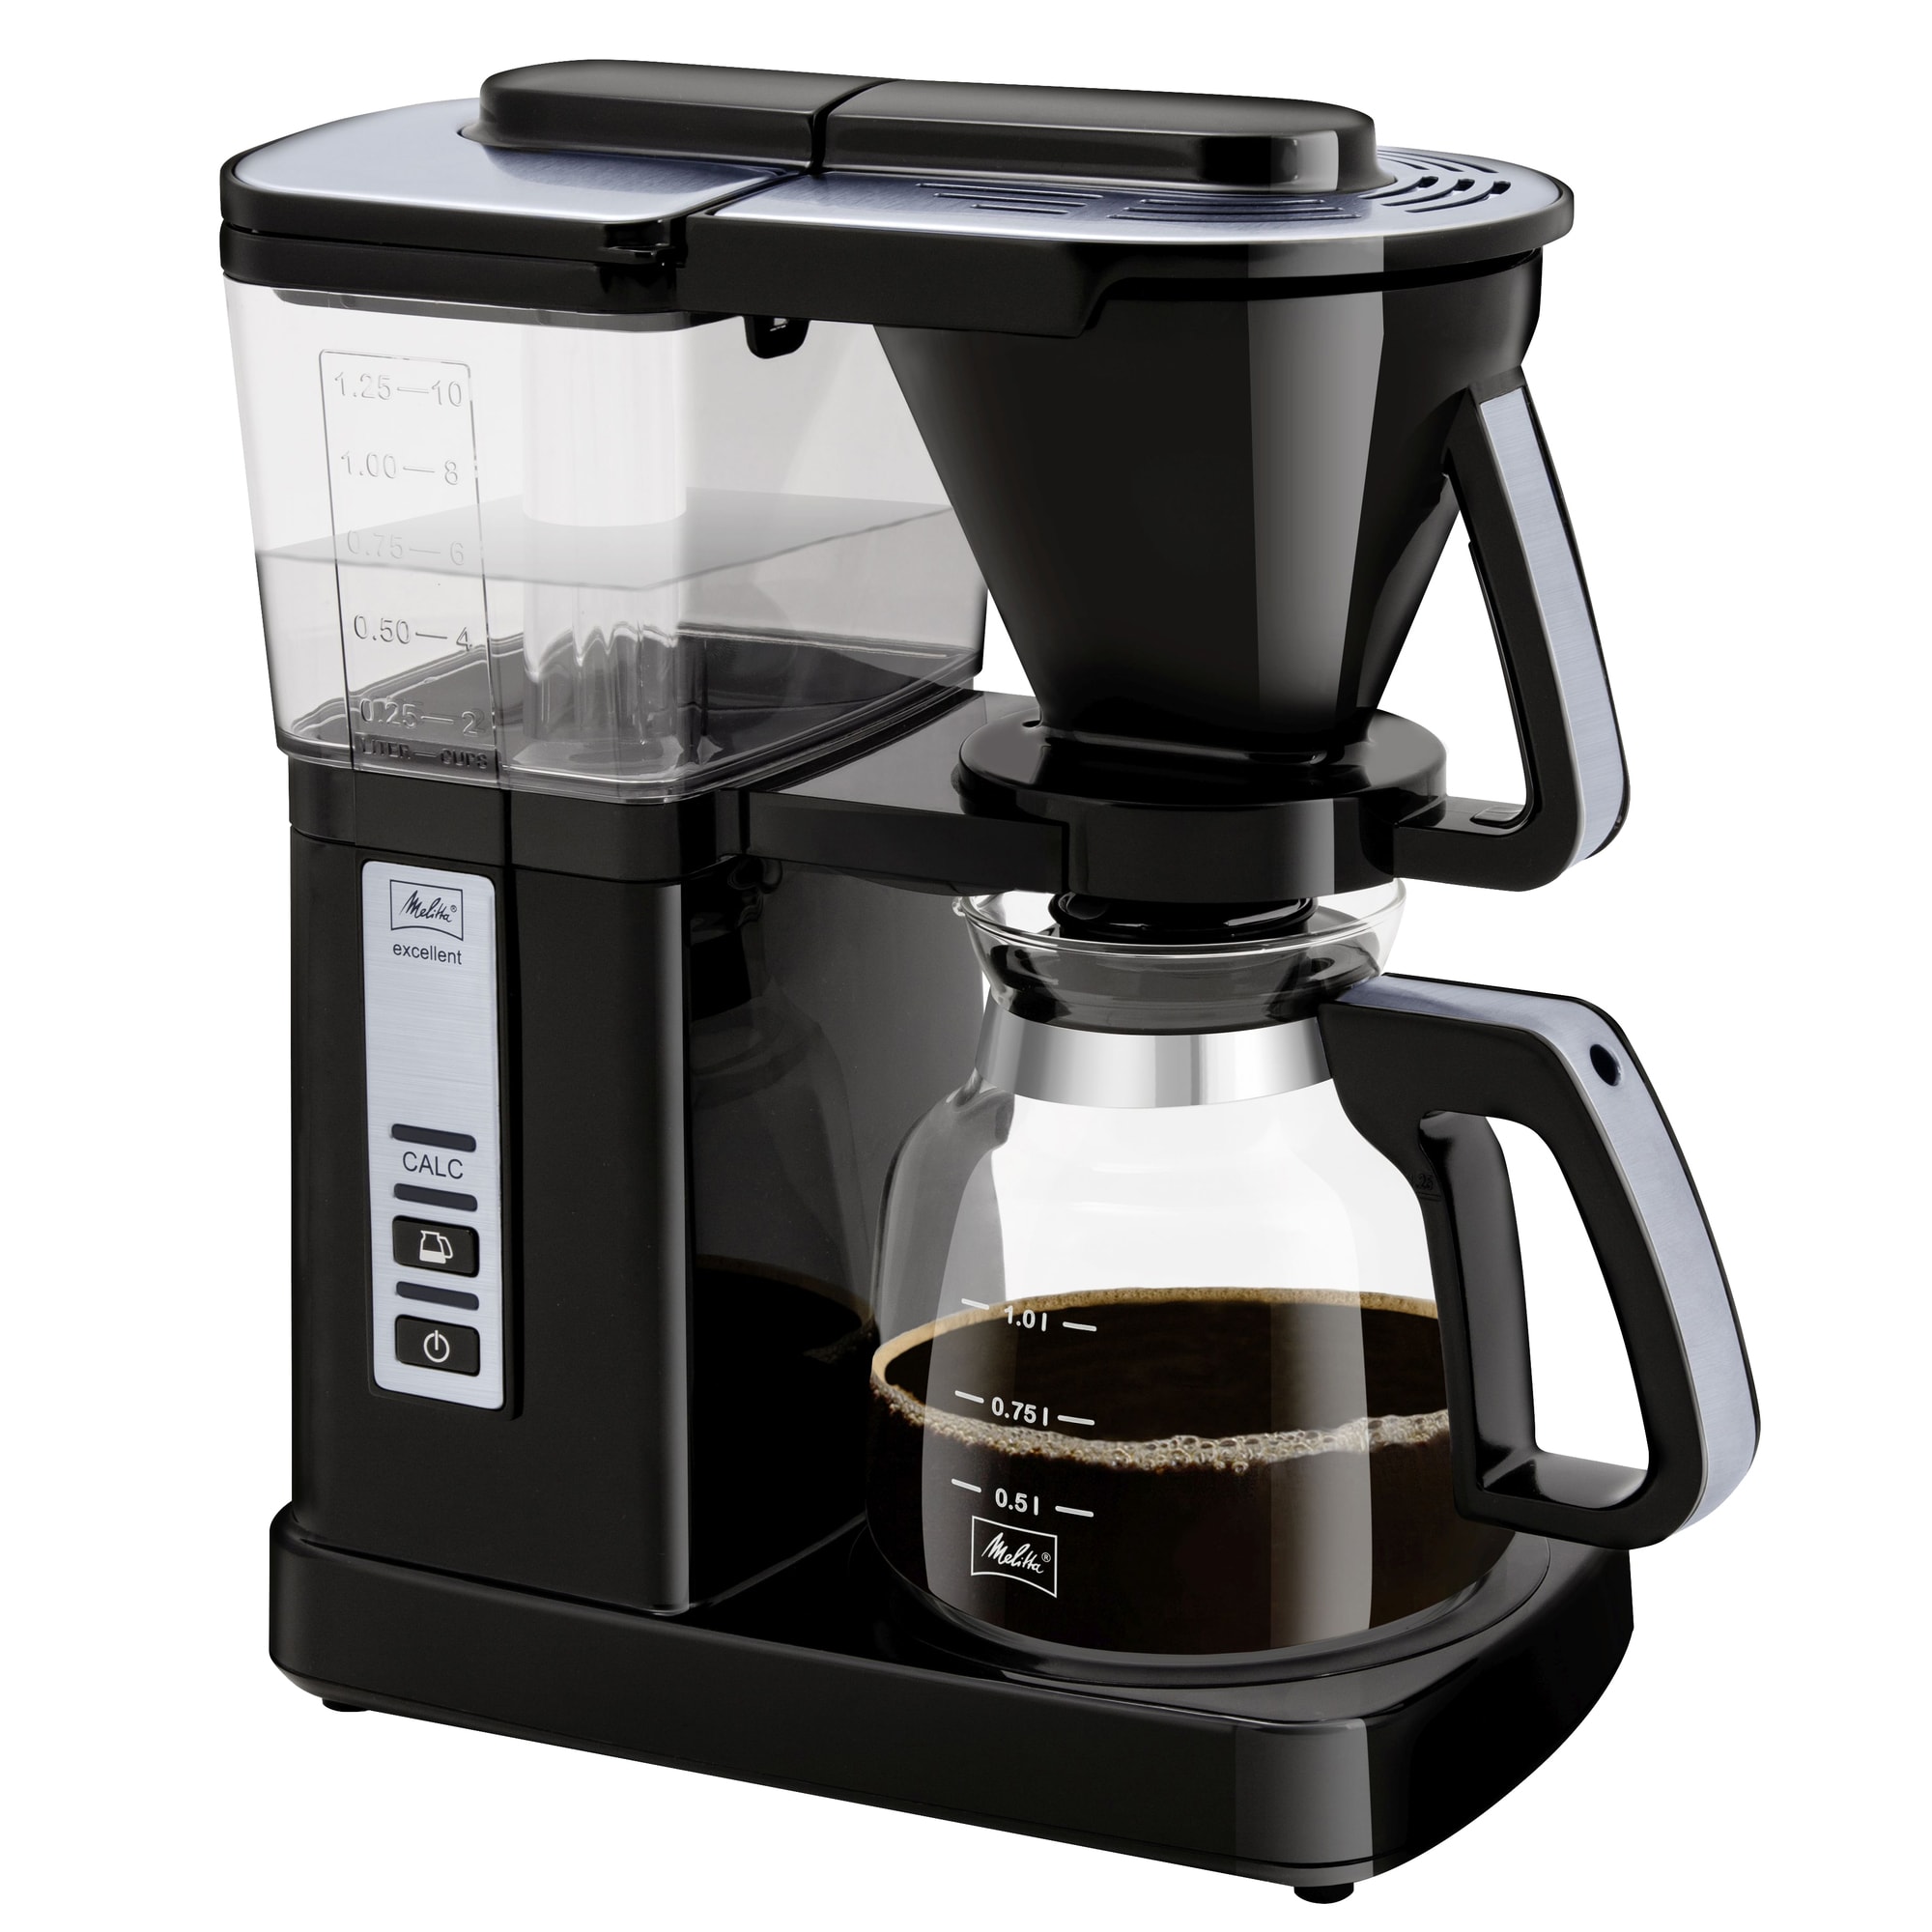 Melitta 5.0 Deluxe kaffemaskine 21841 (sort) | Elgiganten